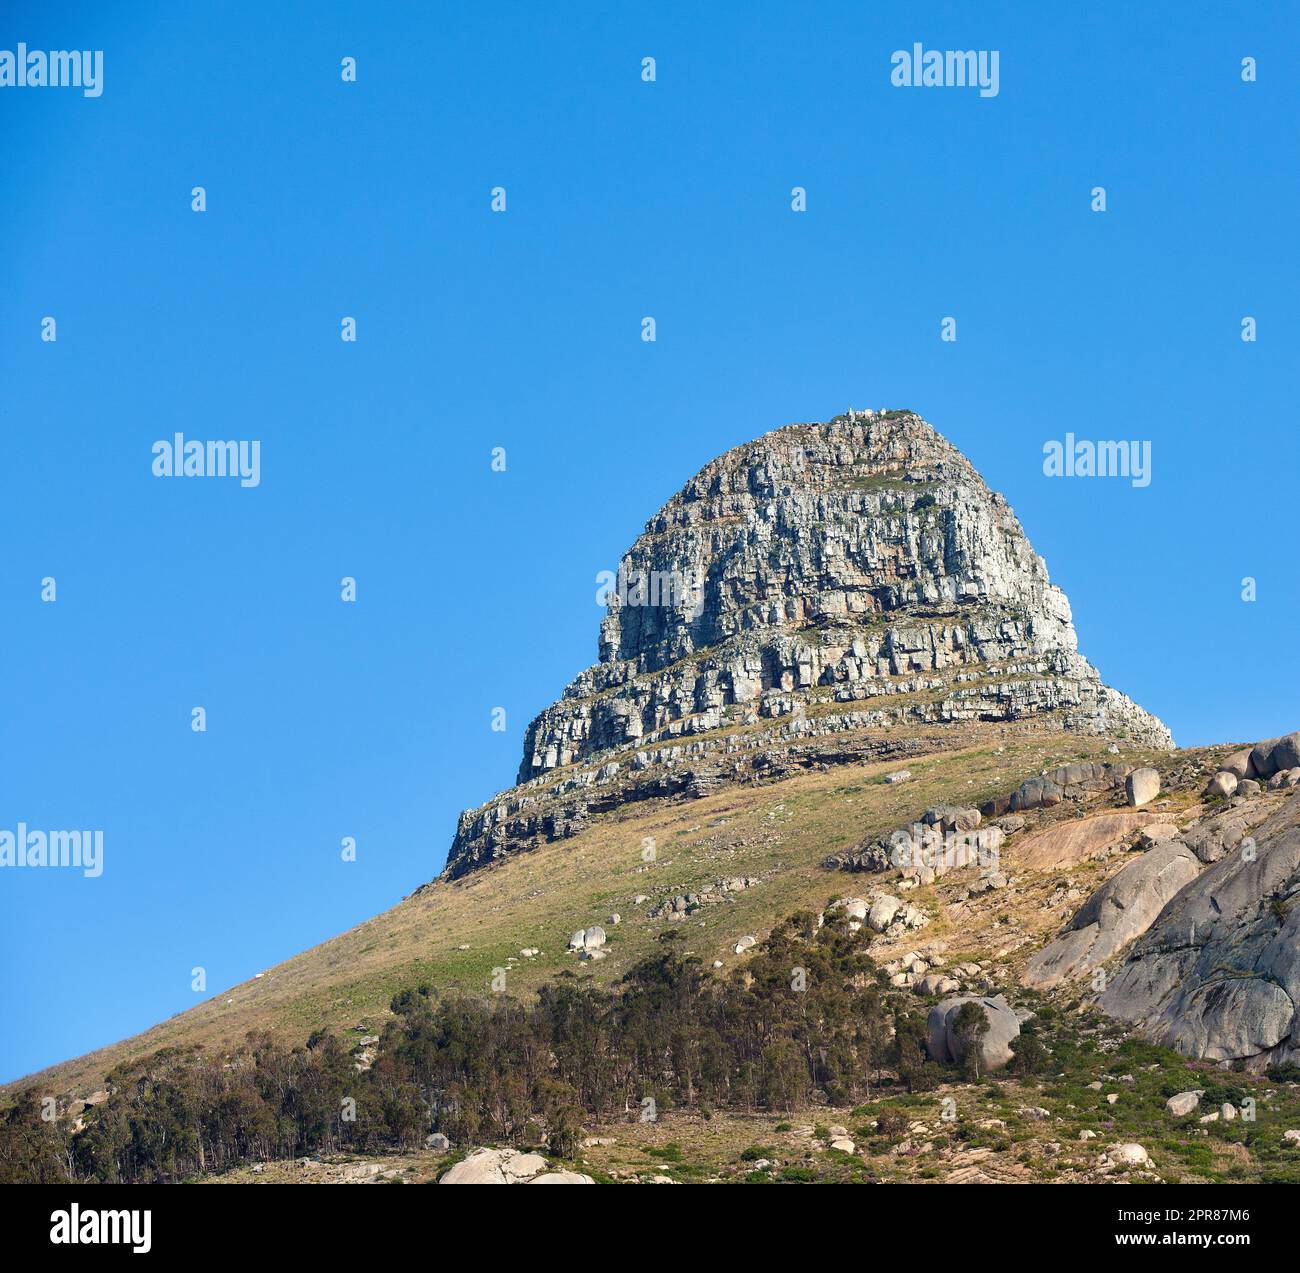 Paysage de la montagne de la tête des Lions sur un ciel bleu clair avec espace de copie. Pic de montagne des Rocheuses avec collines ondulantes couvertes d'arbres et de buissons près de l'emplacement populaire de randonnée dans le Cap, Afrique du Sud Banque D'Images